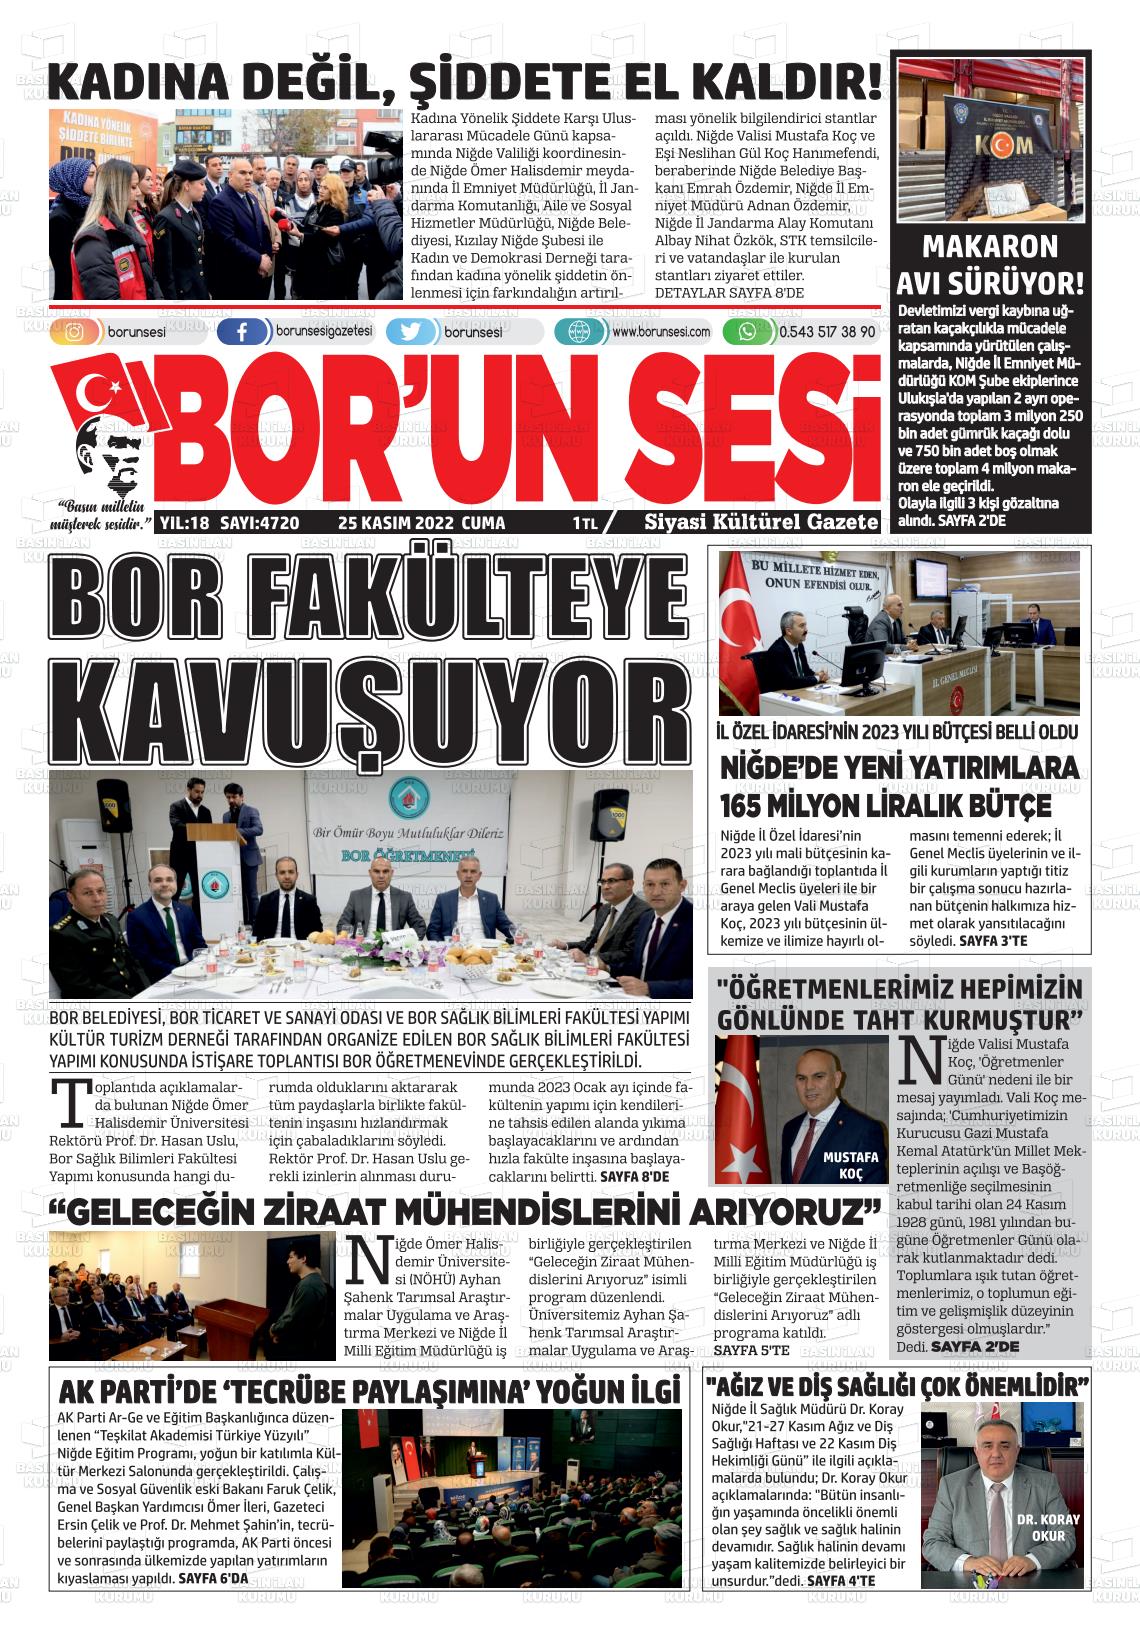 25 Kasım 2022 Bor'un Sesi Gazete Manşeti